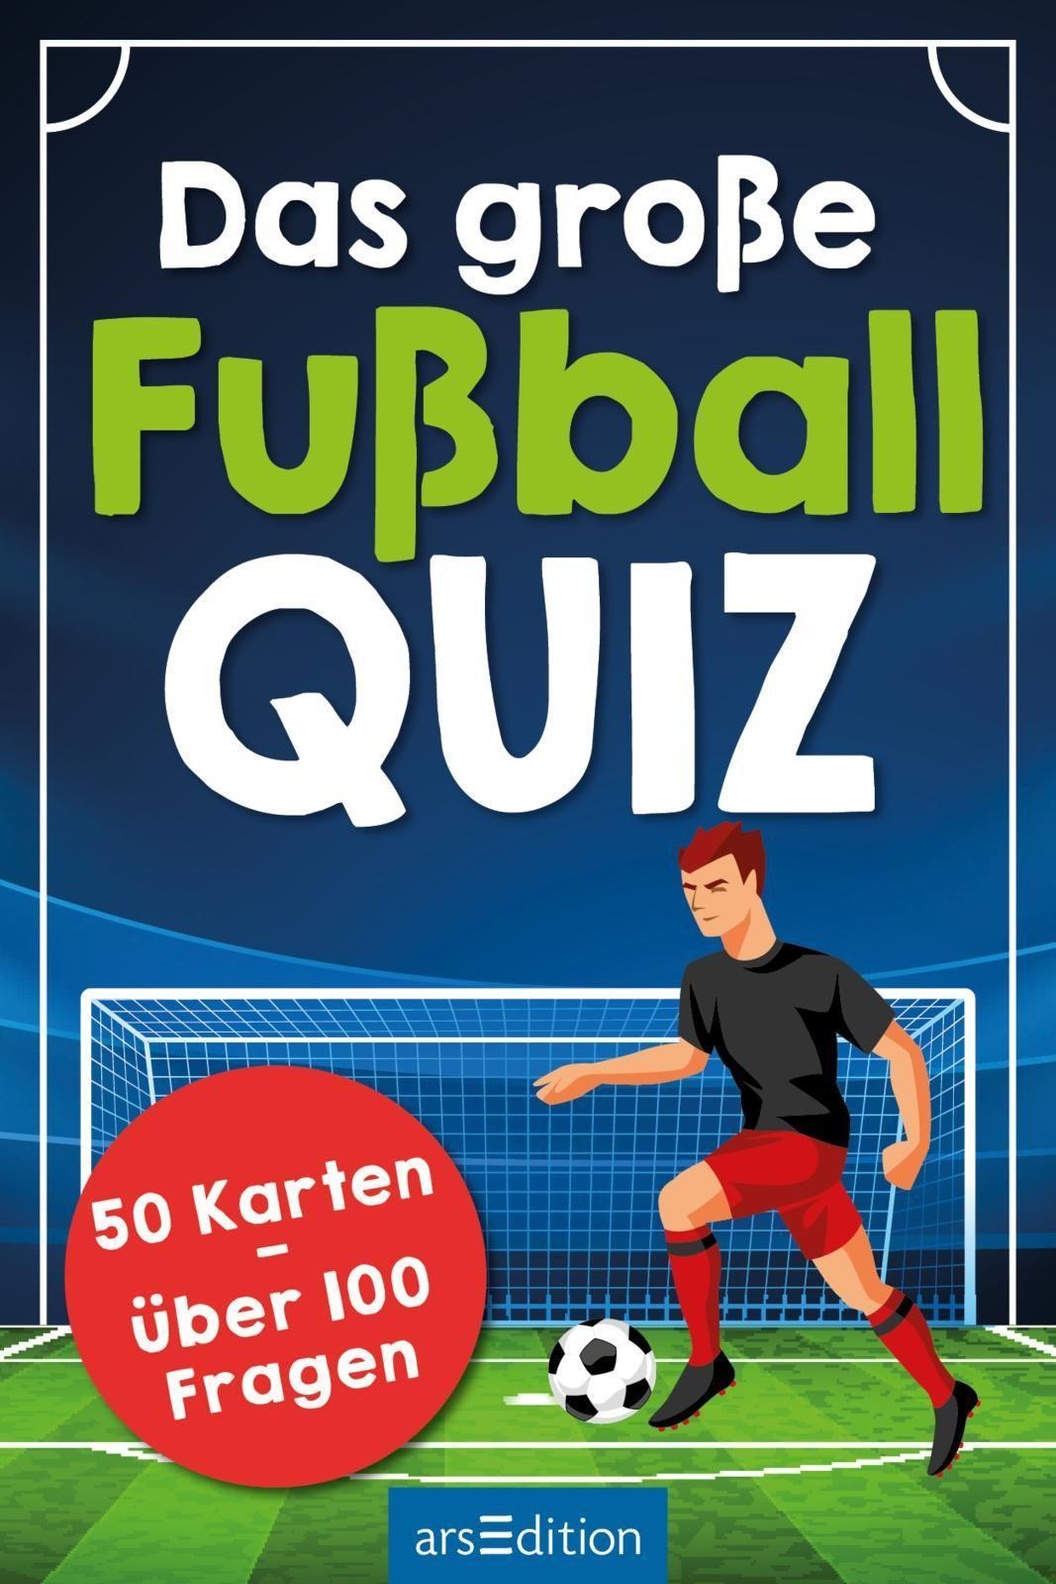 Das Grosse Fussball Quiz Spiel Buch Versandkostenfrei Bei Weltbild De